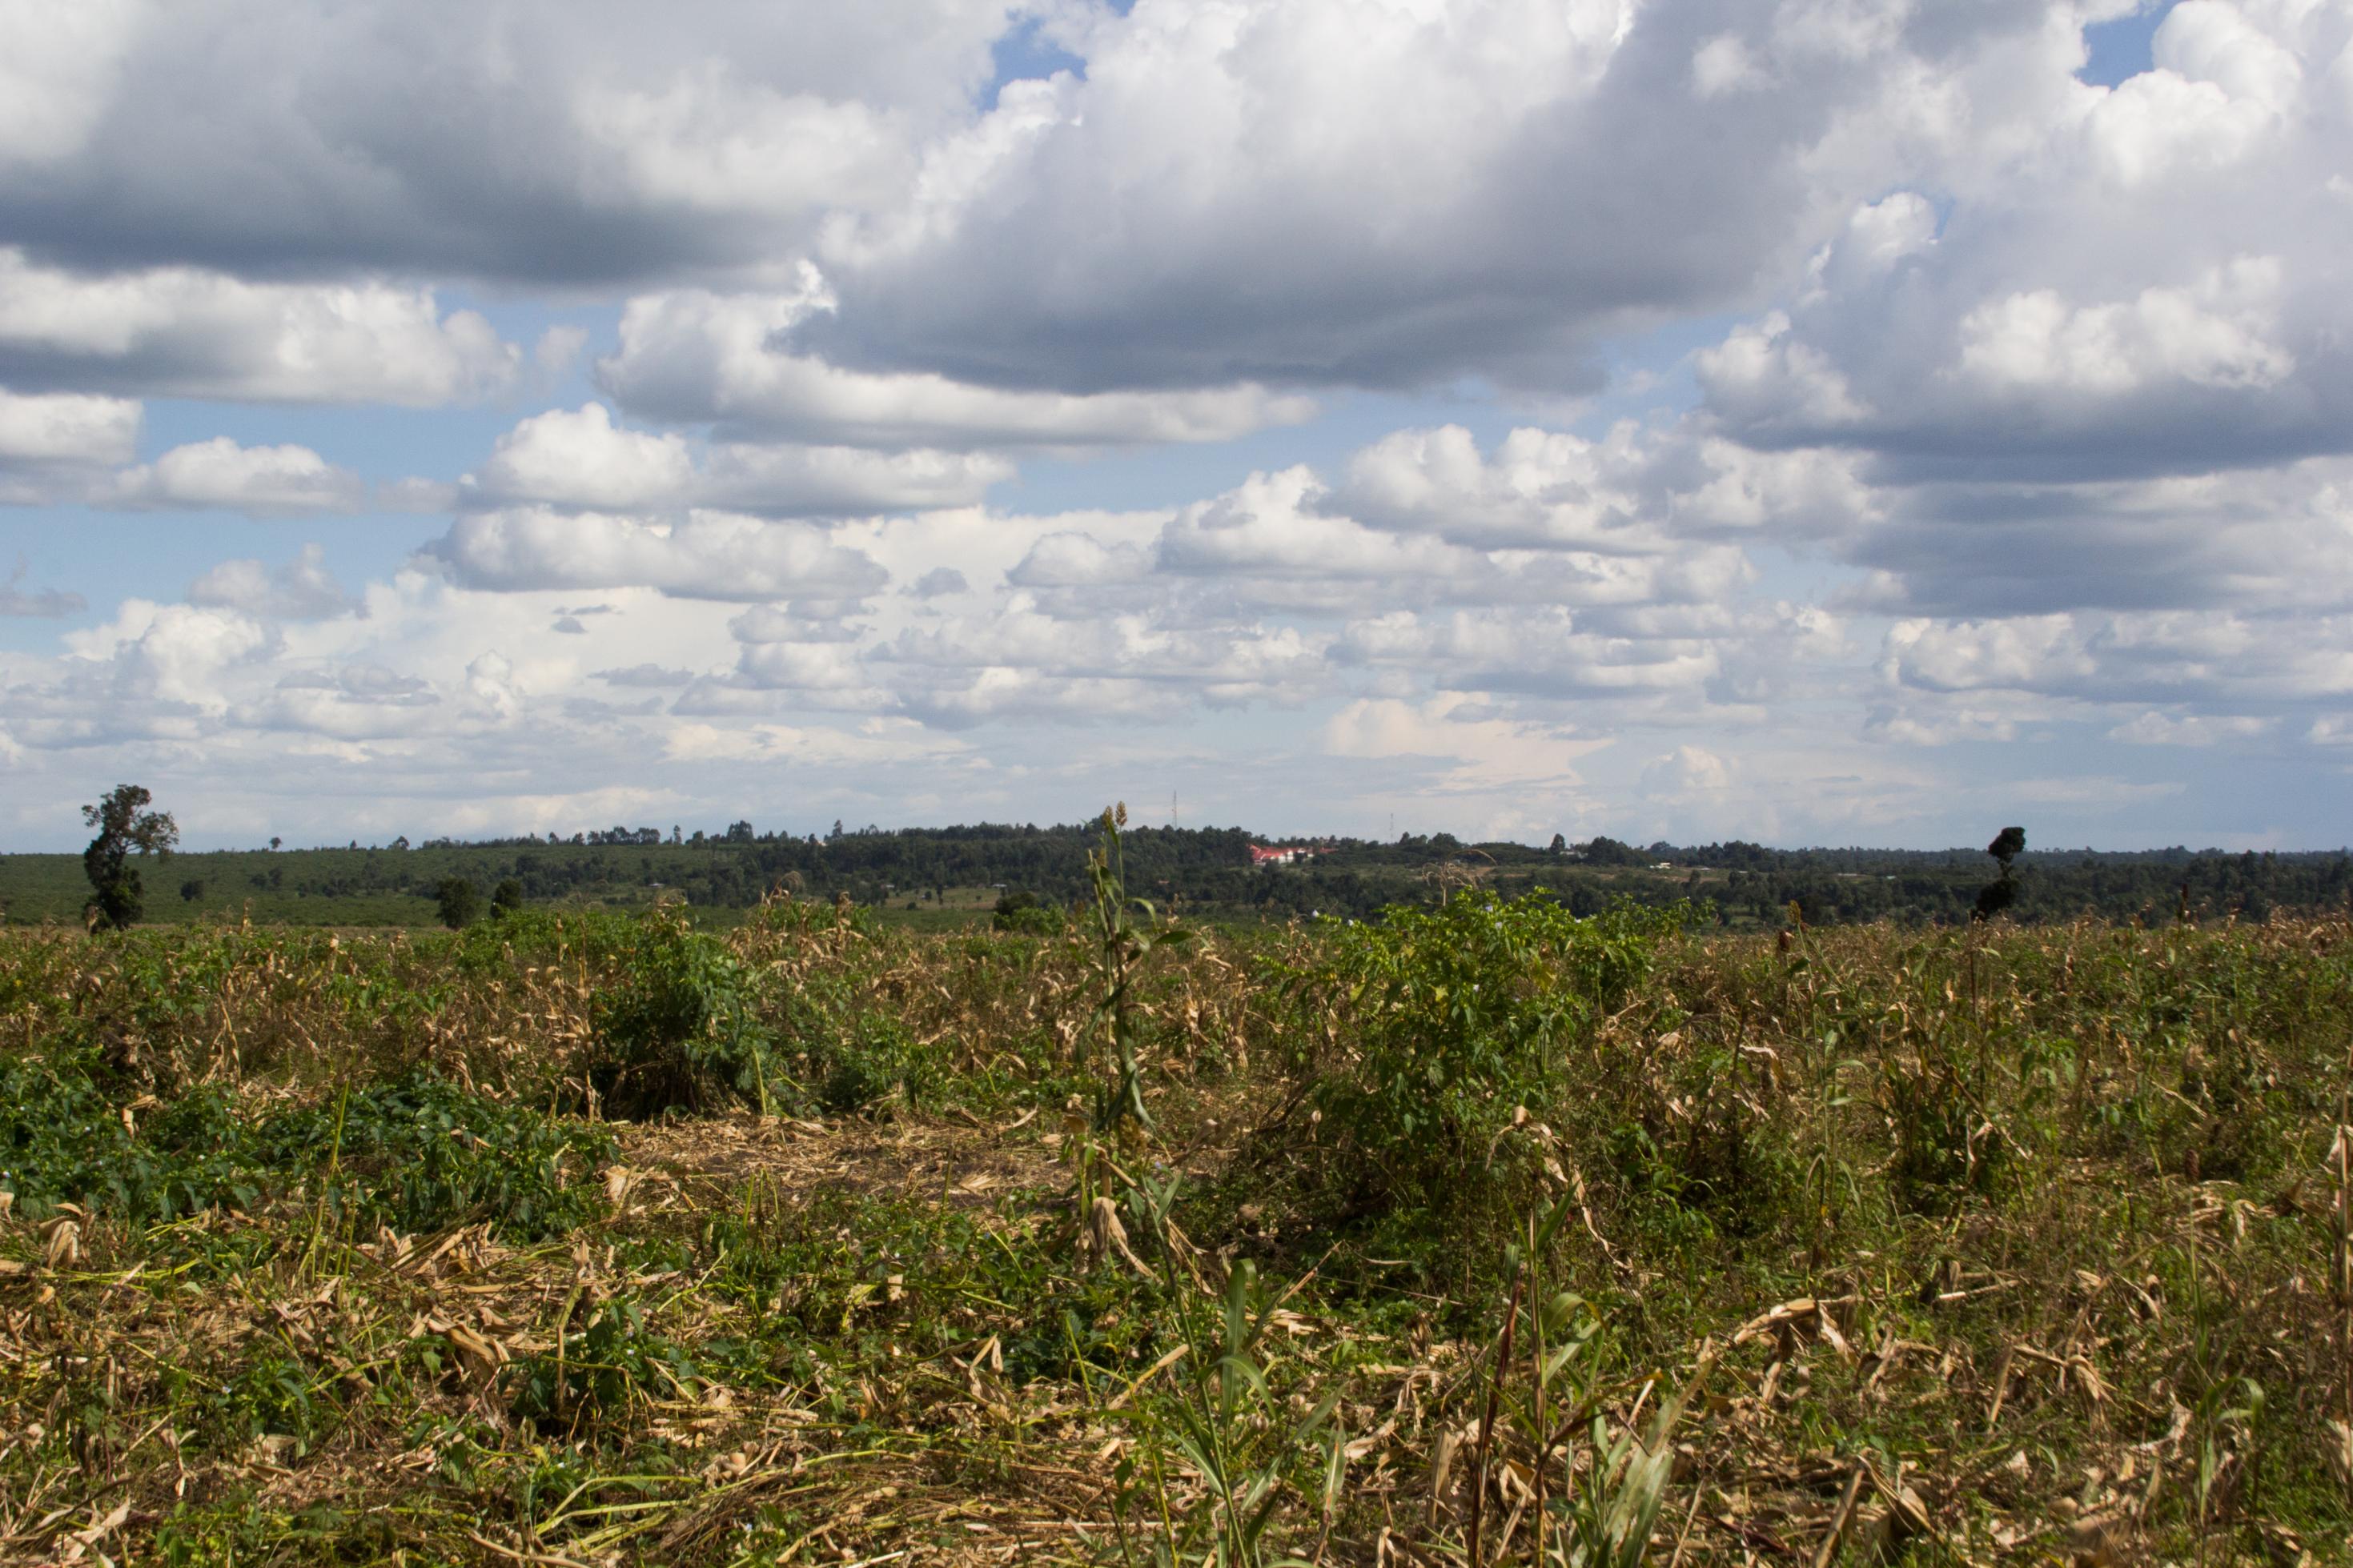 Im Vordergrund ist ein abgeerntetes Maisfeld zu sehen, im Hintergrund ein paar Bäume, zwischen den Bäumen einige Häuser.